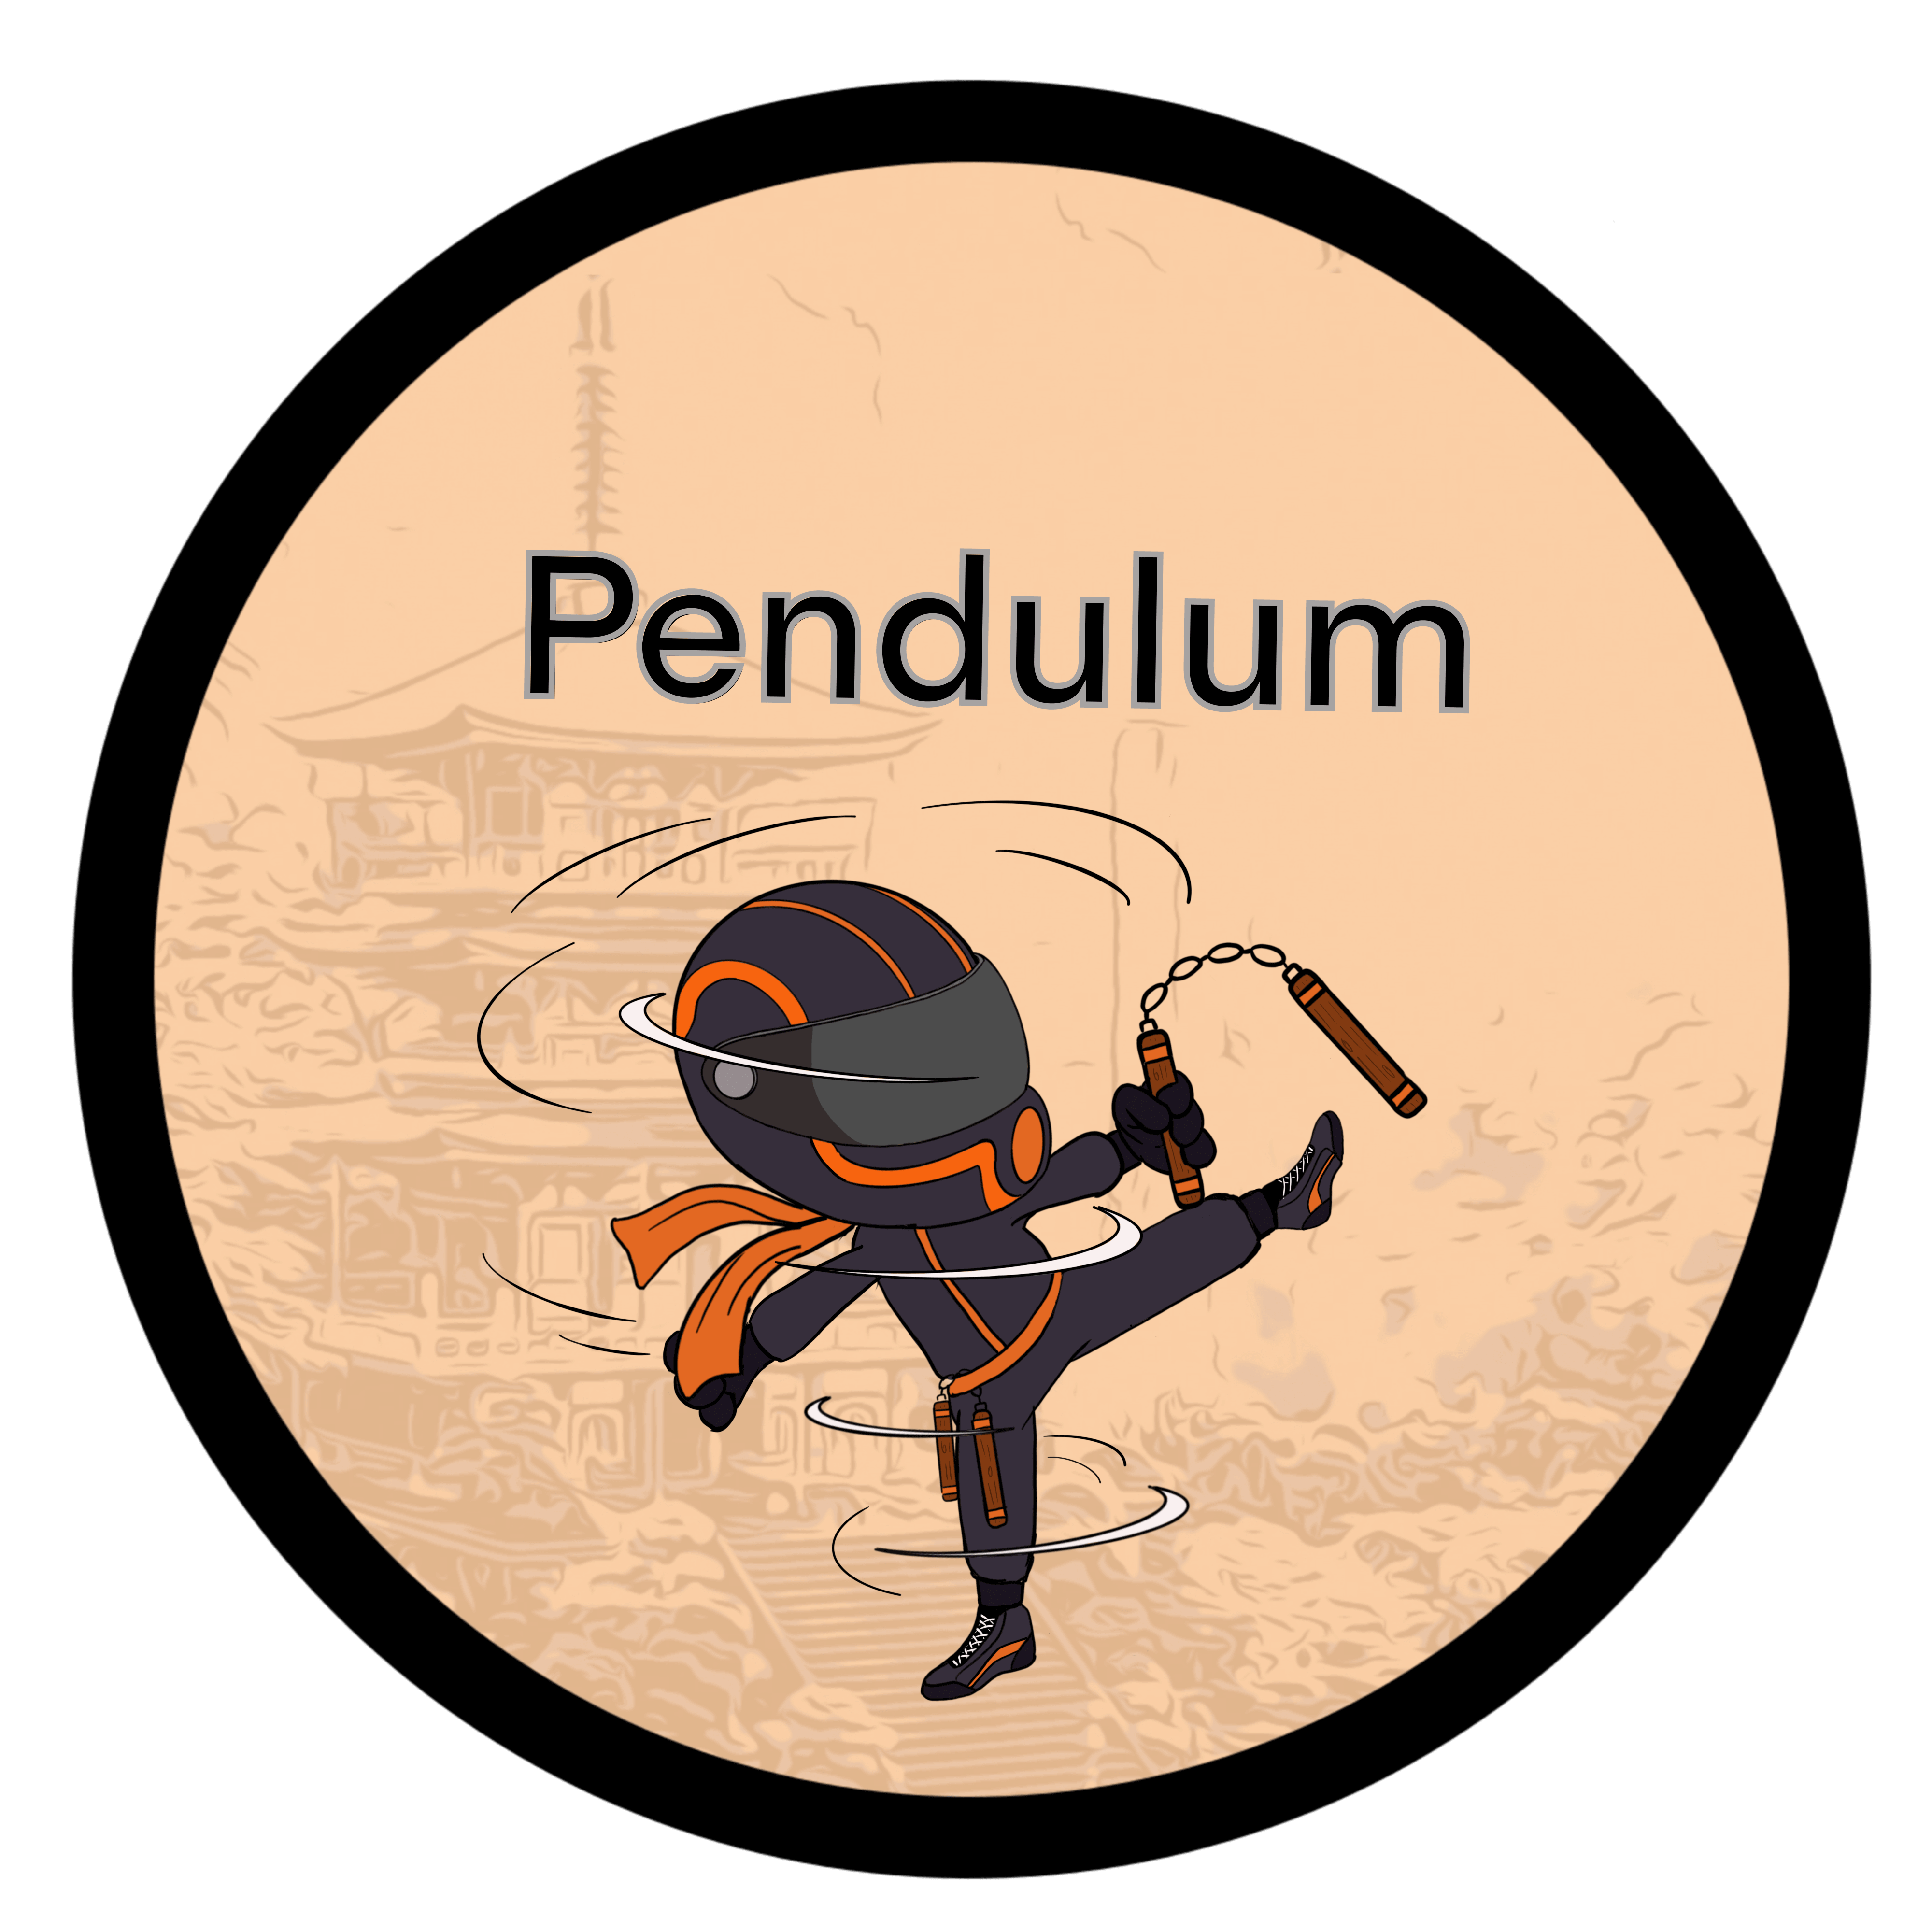 Pendulum Images